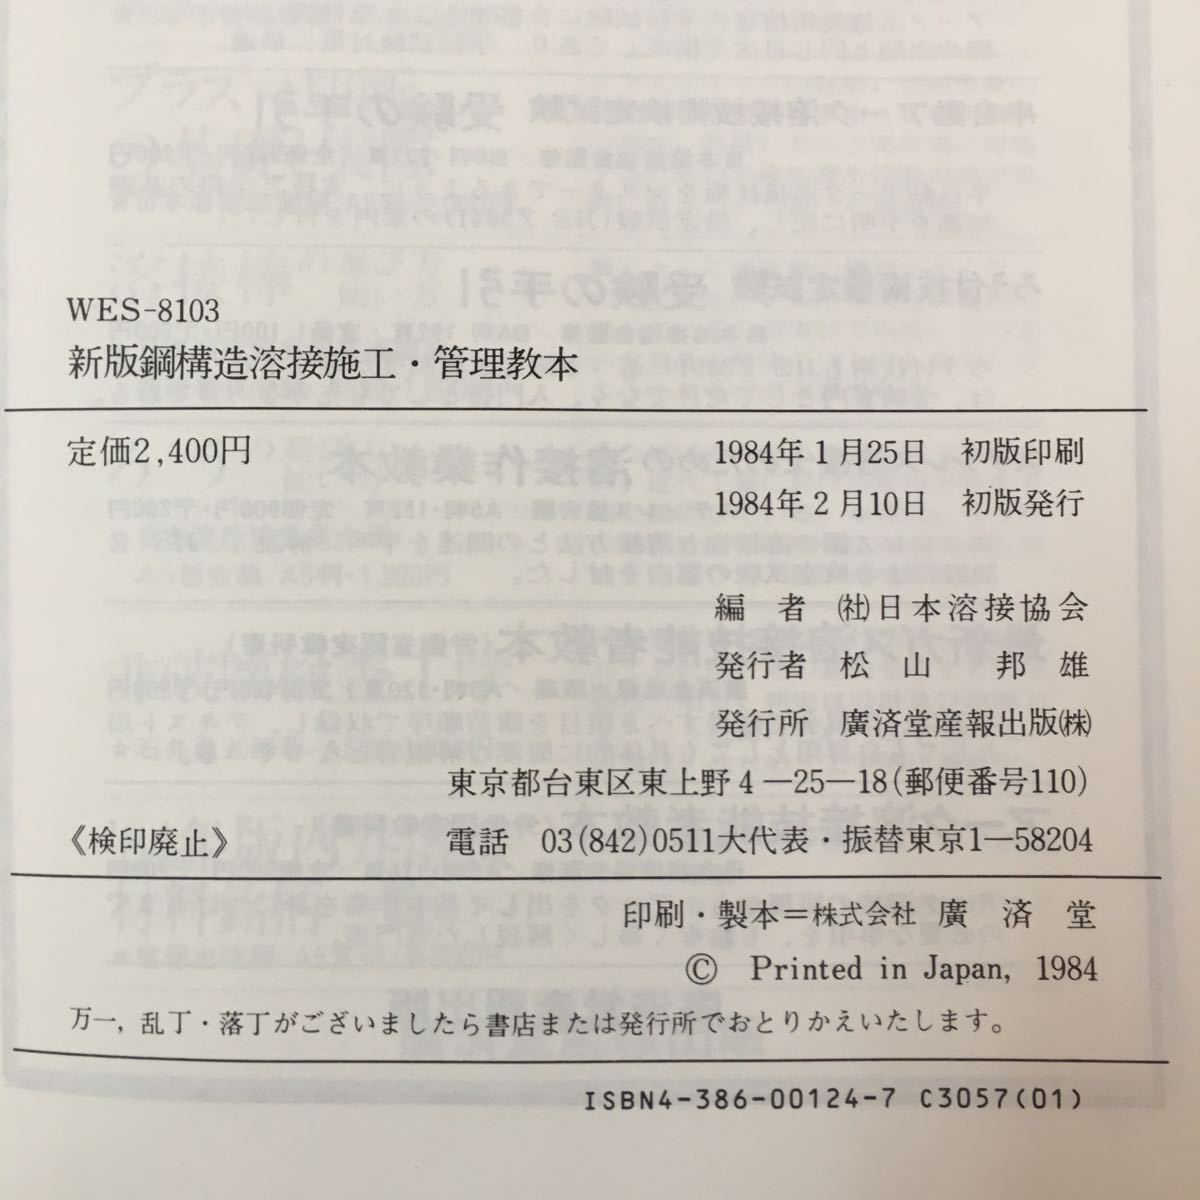 S7a-136 WES-8103 (略称)溶接技術者資格認定規格 鋼構造溶接施工・管理教本 受験の手引と問題集 日本溶接協会編 1984年2月10日初版発行_画像7